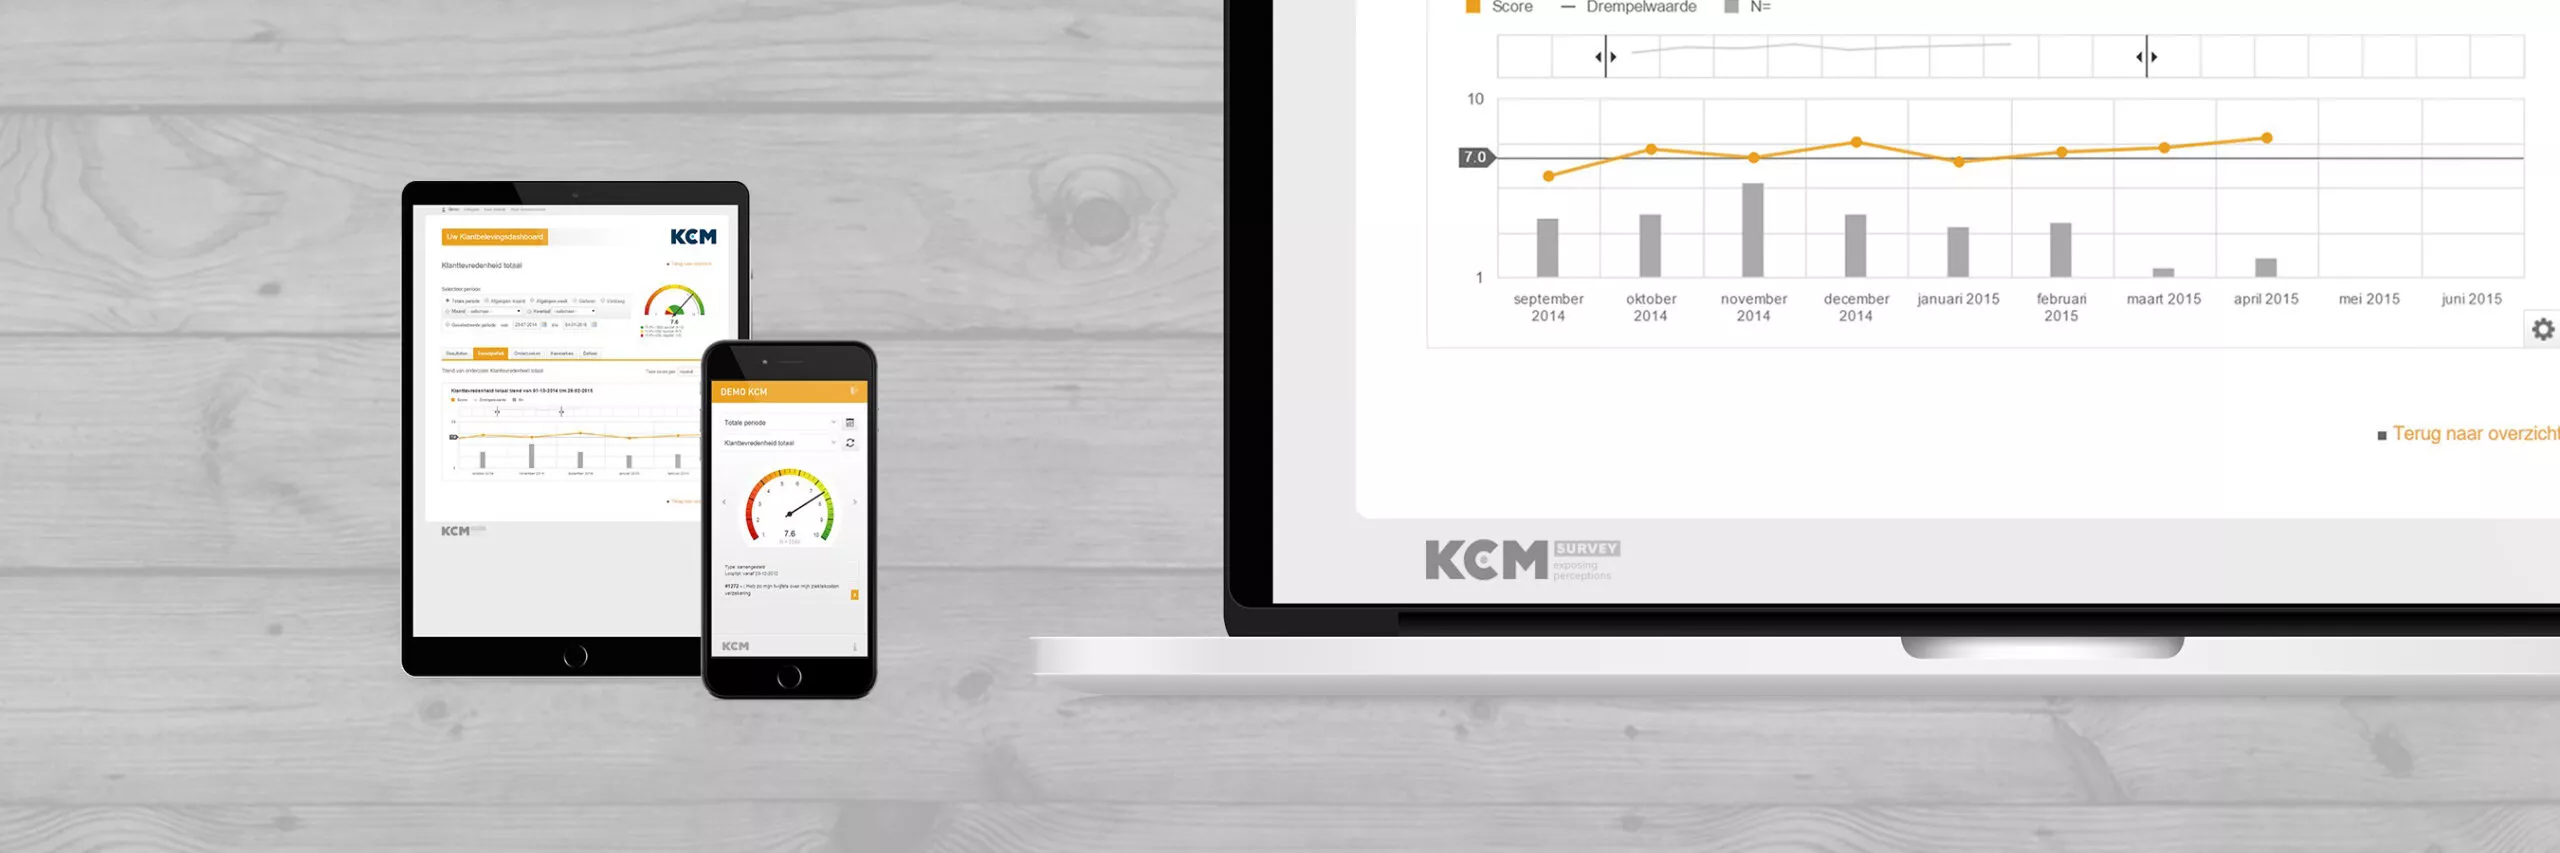 Een afbeelding die de dashboard van KCM op een app en een laptop laat zien